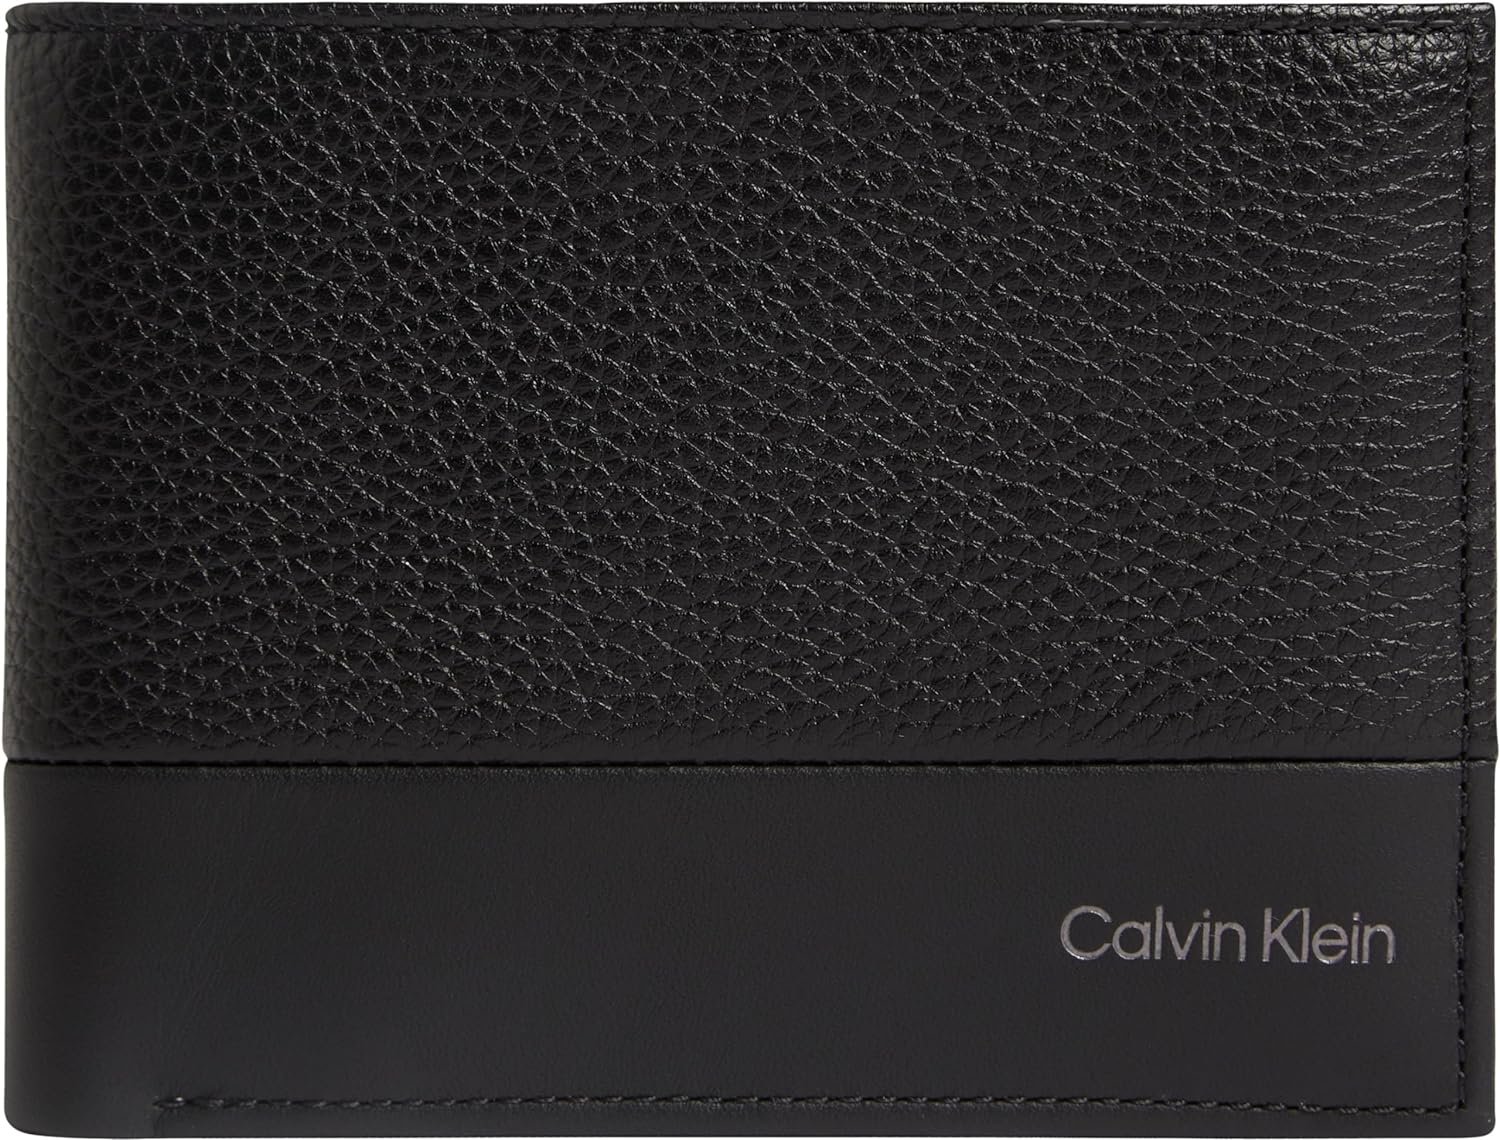 CALVIN KLEIN Portafoglio Uomo - Nero modello K50K509179